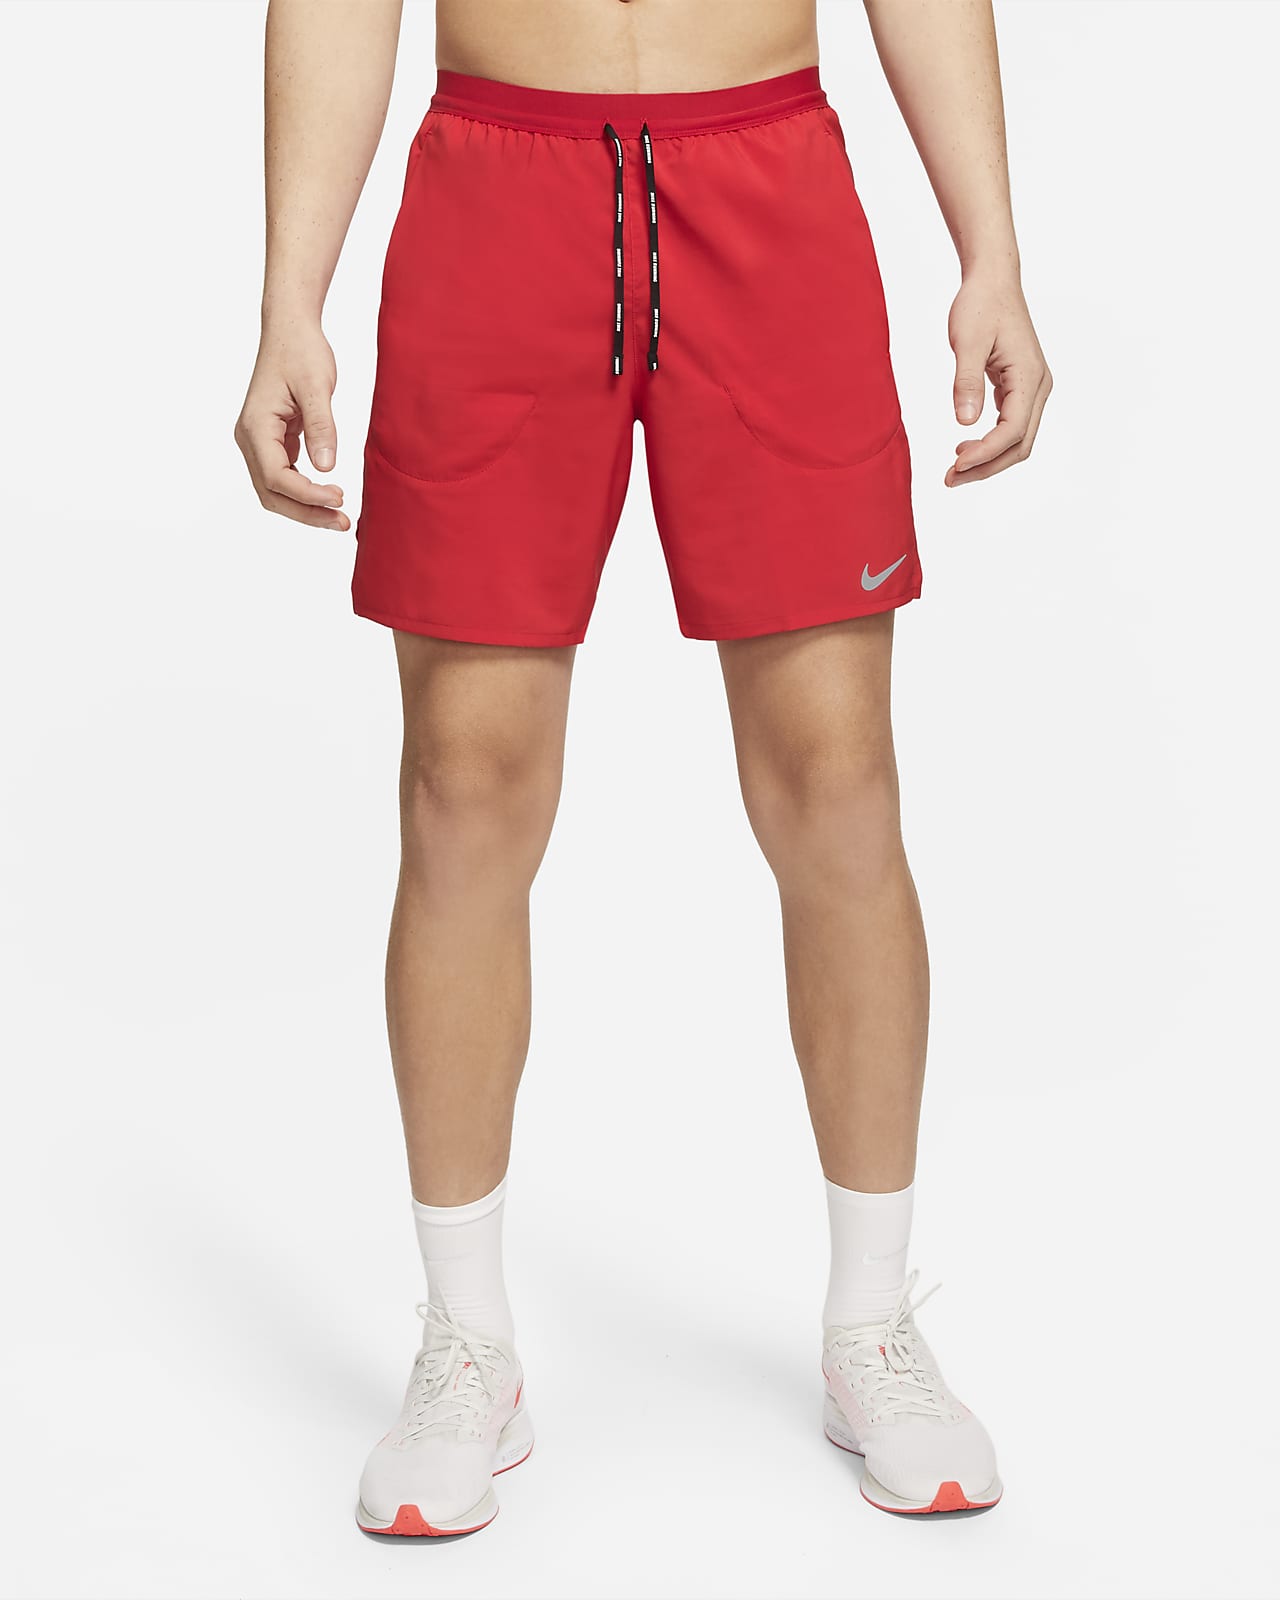 Shorts de 2 1 de 18 cm para hombre Nike Flex Stride. Nike.com